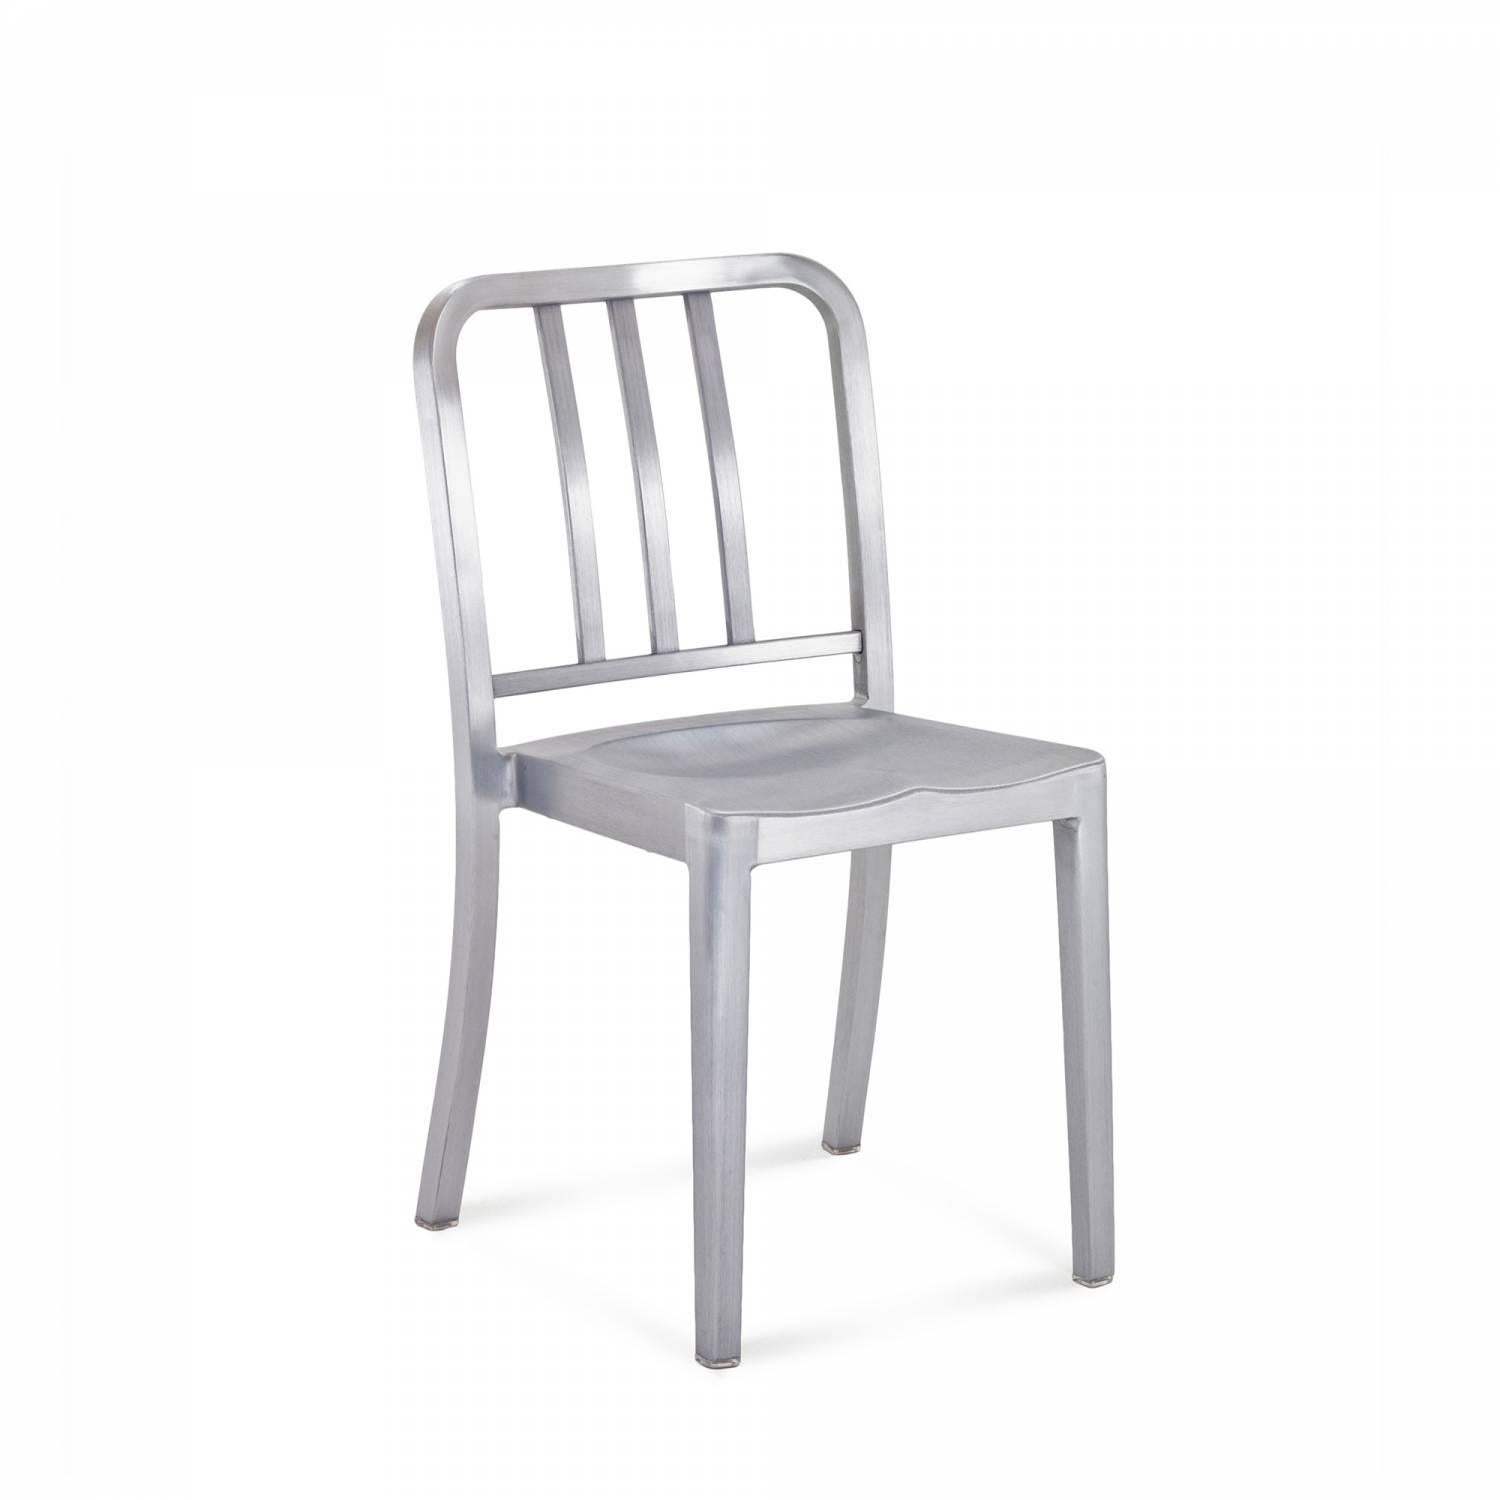 Heritage est une chaise empilable conçue par Philippe Starck, inspirée de l'original 1006 Navy. La version à bascule a été conçue pour le célèbre restaurant Bon à Paris. Conçue comme une chaise 